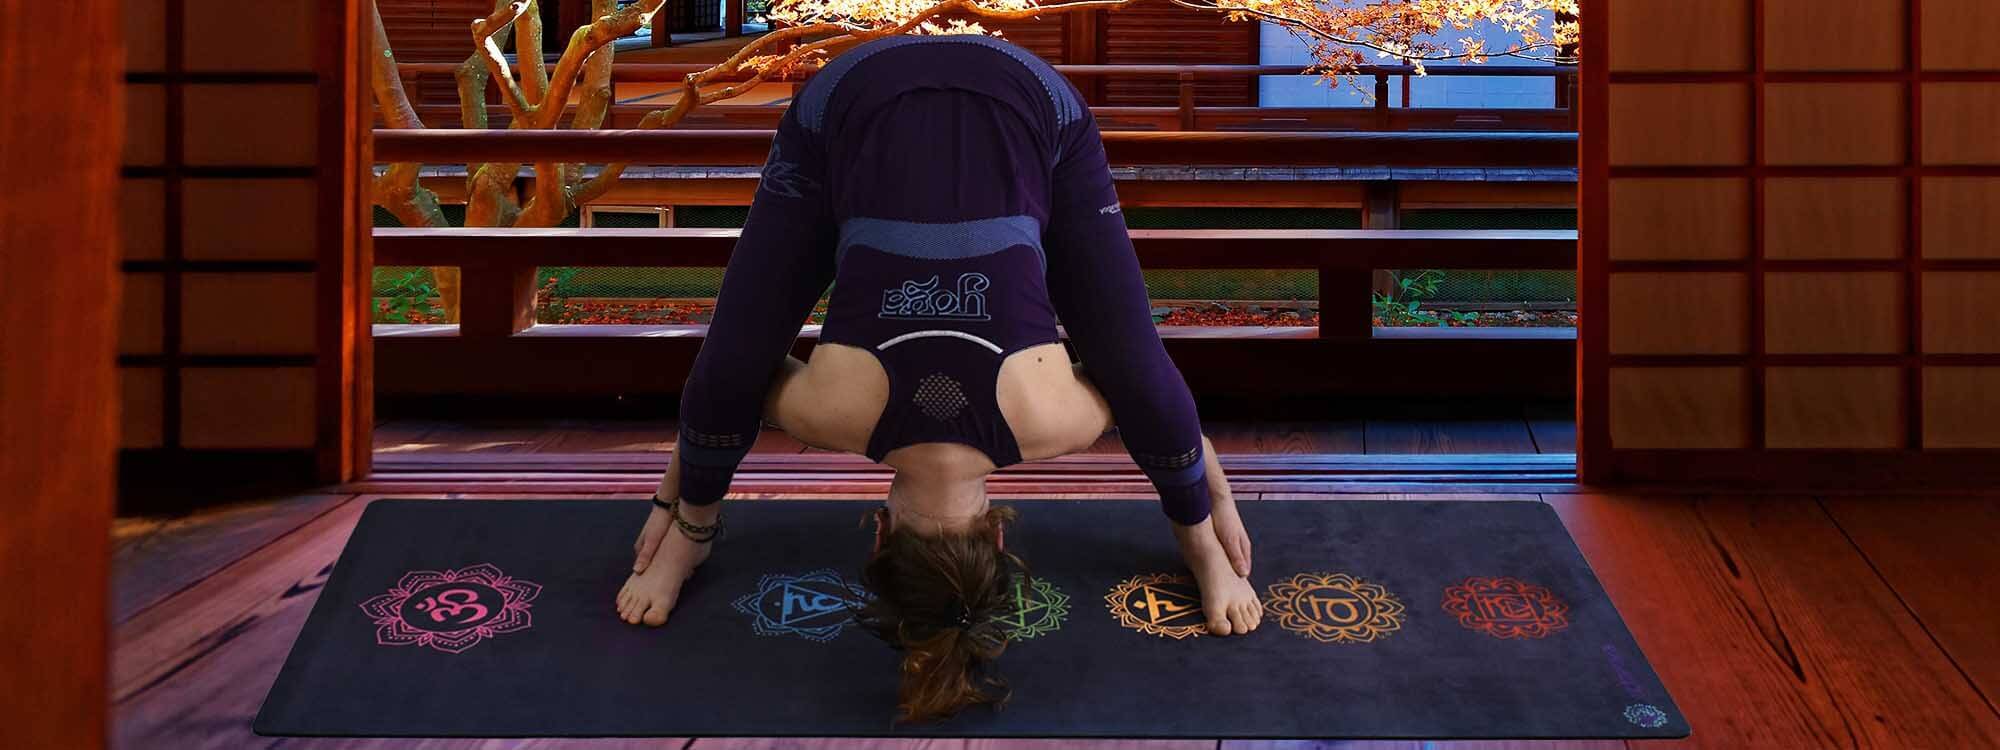 Tapis en mousse pour le yoga - Epais, avec une housse de rangement ! –  Digital noWmad